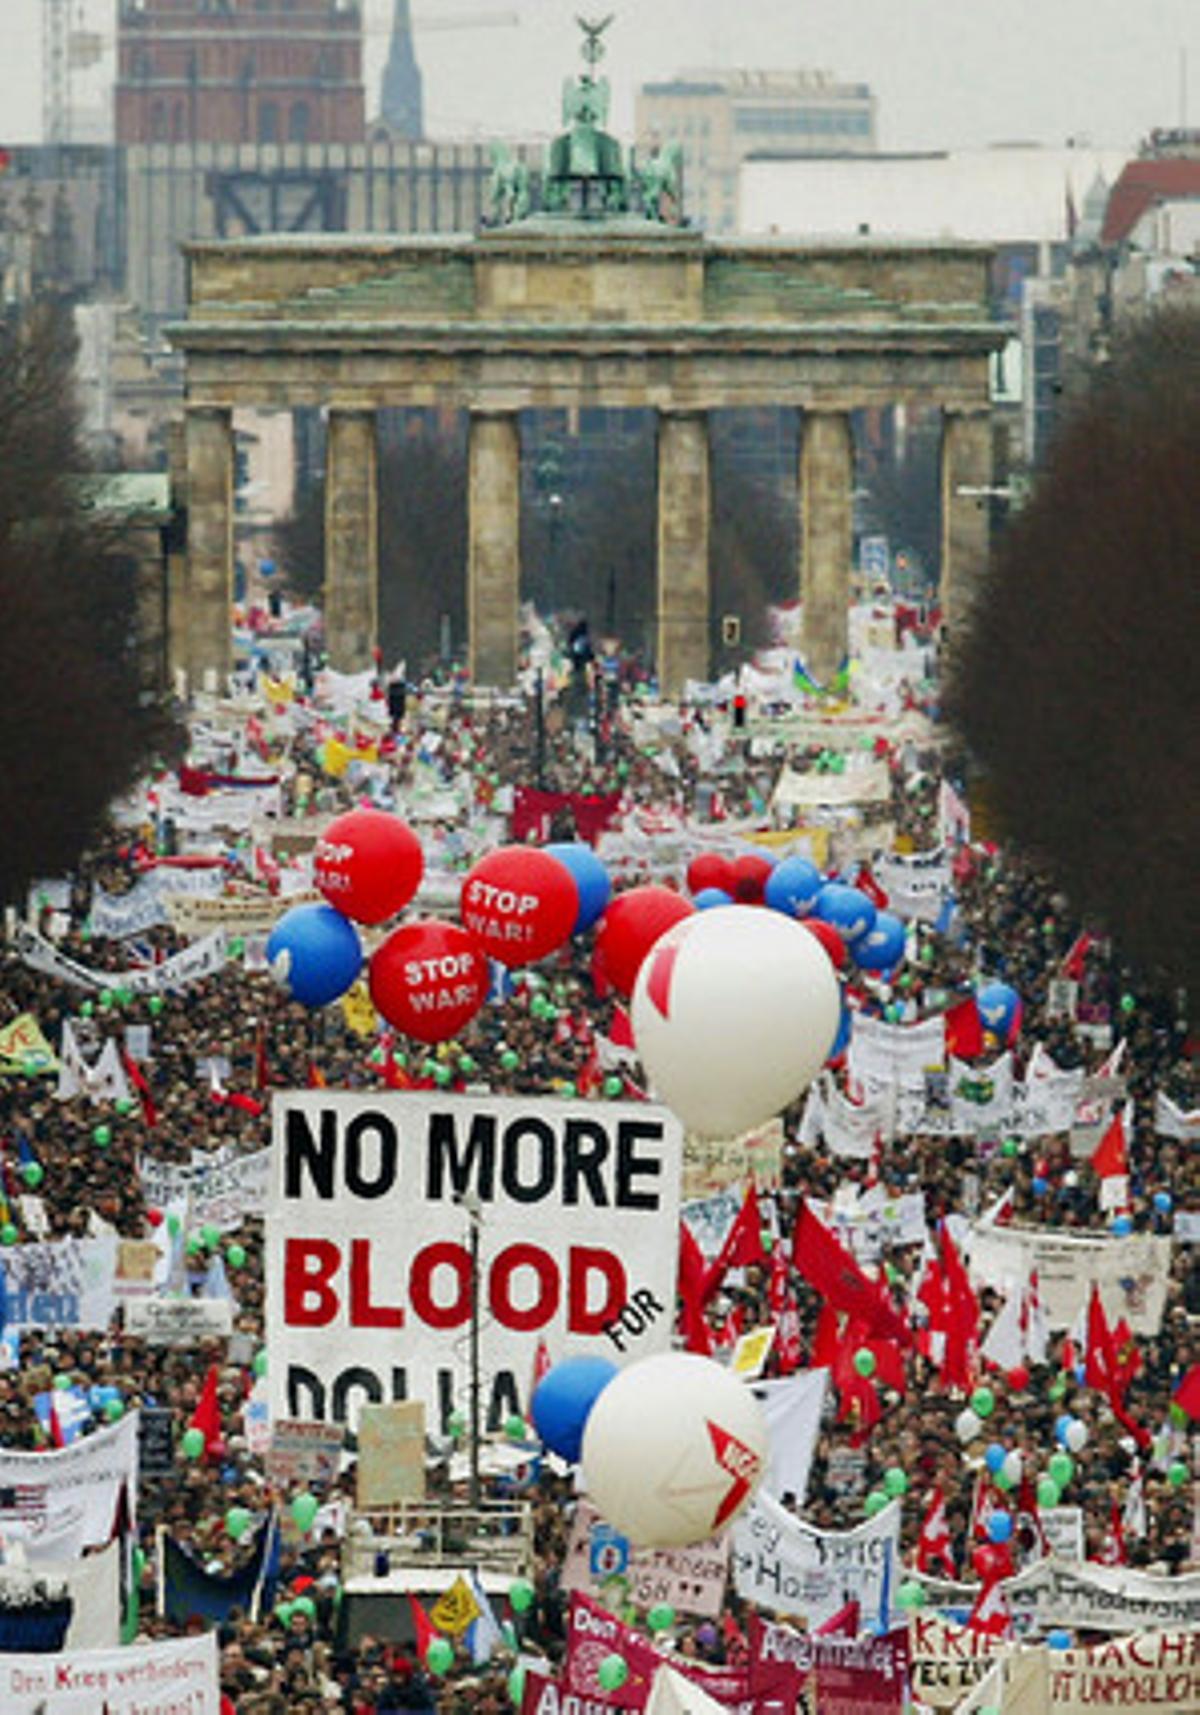 Medio millón de personas salieron a las calles de Berlín para alzar la voz contra la guerra y para apoyar al Gobierno del canciller Gerard Shröder, que desde el comienzo se opuso al uso de la fuerza en Irak. La foto muestra a miles de manifestantes en la puerta de Brandemburgo, símbolo de la capital alemana.